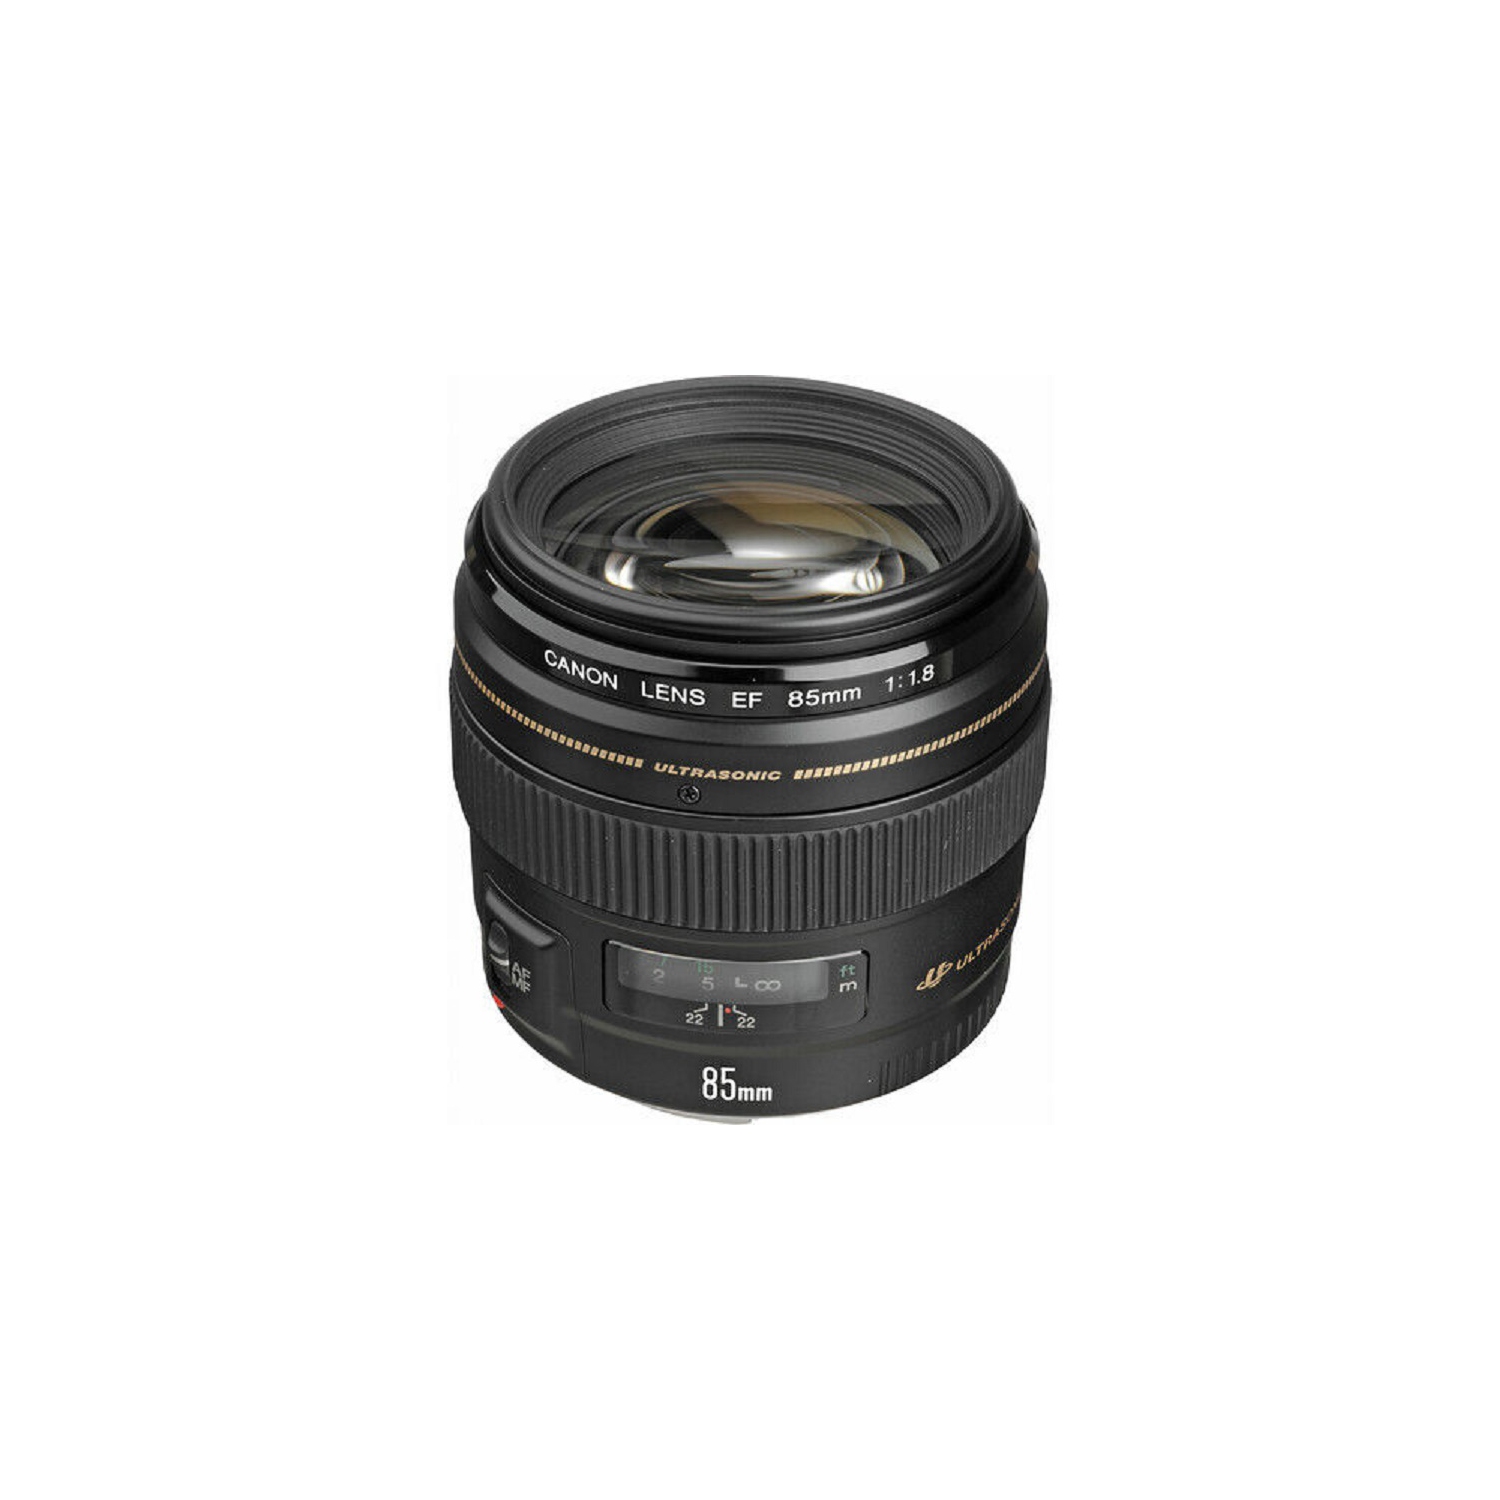 Canon EF 85mm f/1.8 USM Lens 2519A003 - 10PC Accessory Bundle